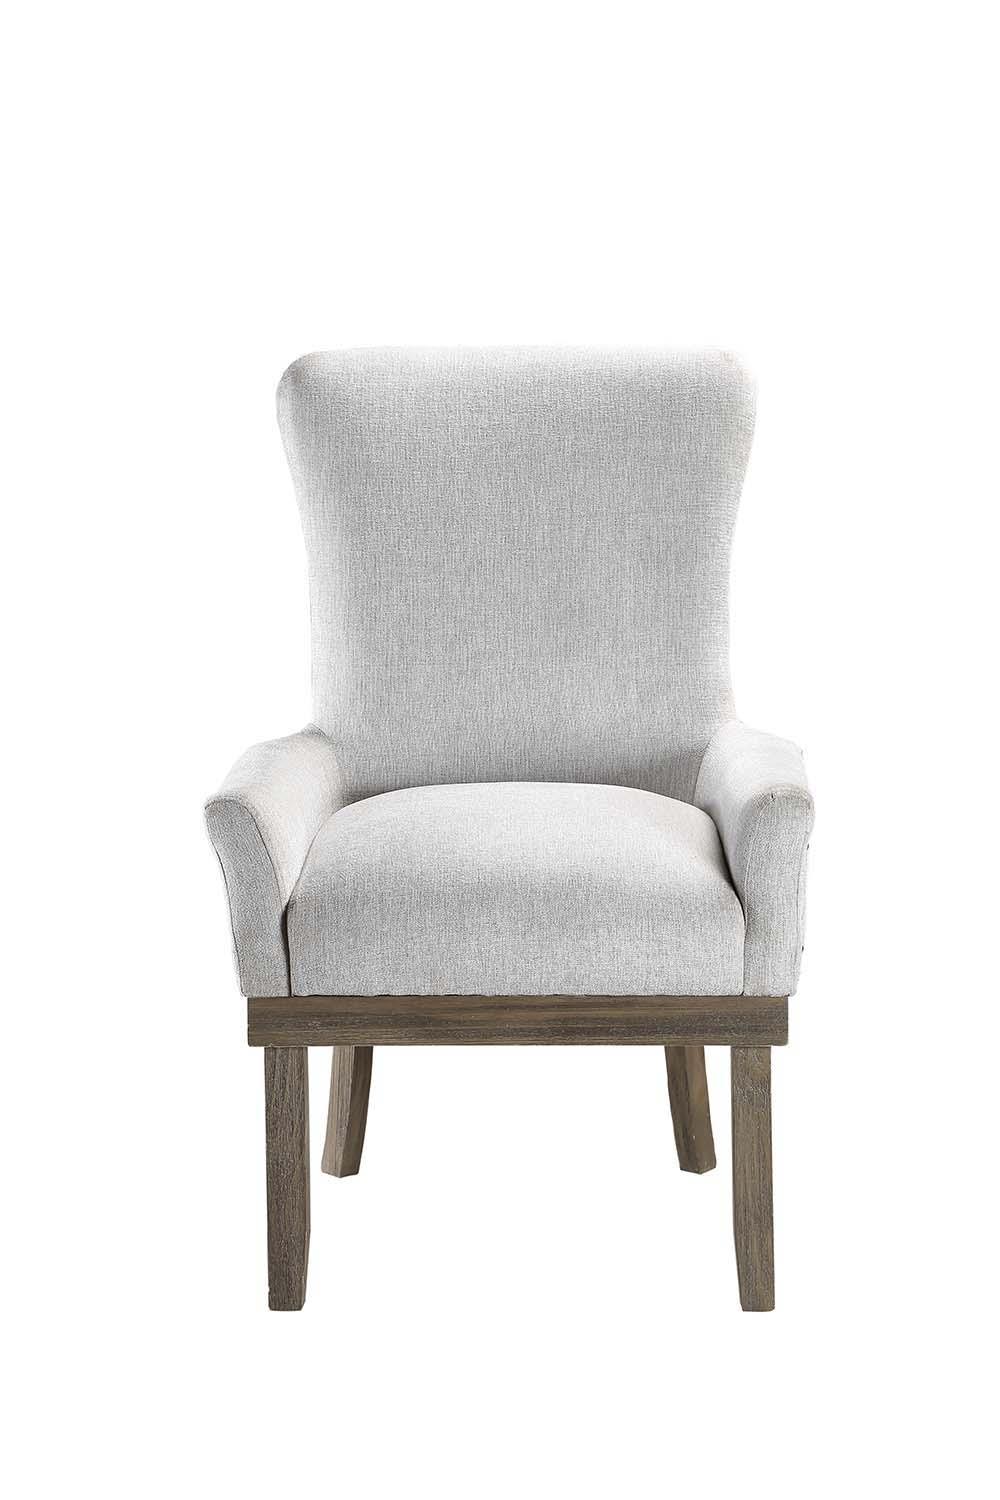 ACME - Landon - Chair - 5th Avenue Furniture